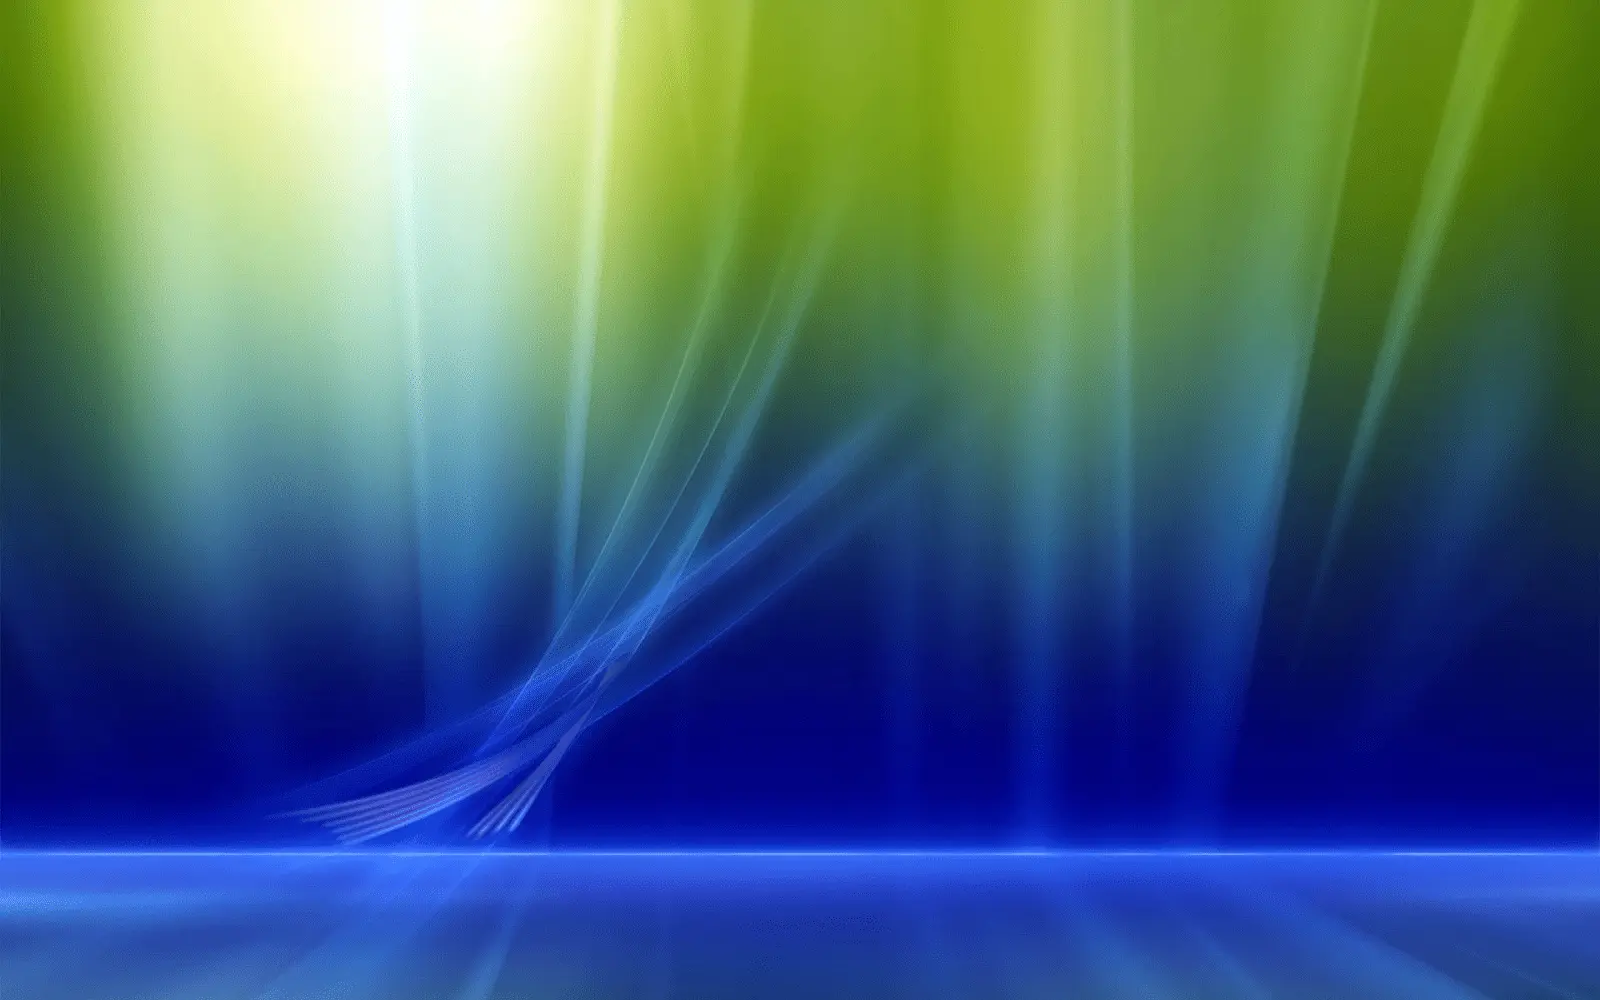 Ejemplo de estética Frutiger Aurora con un fondo etéreo inspirado en la aurora